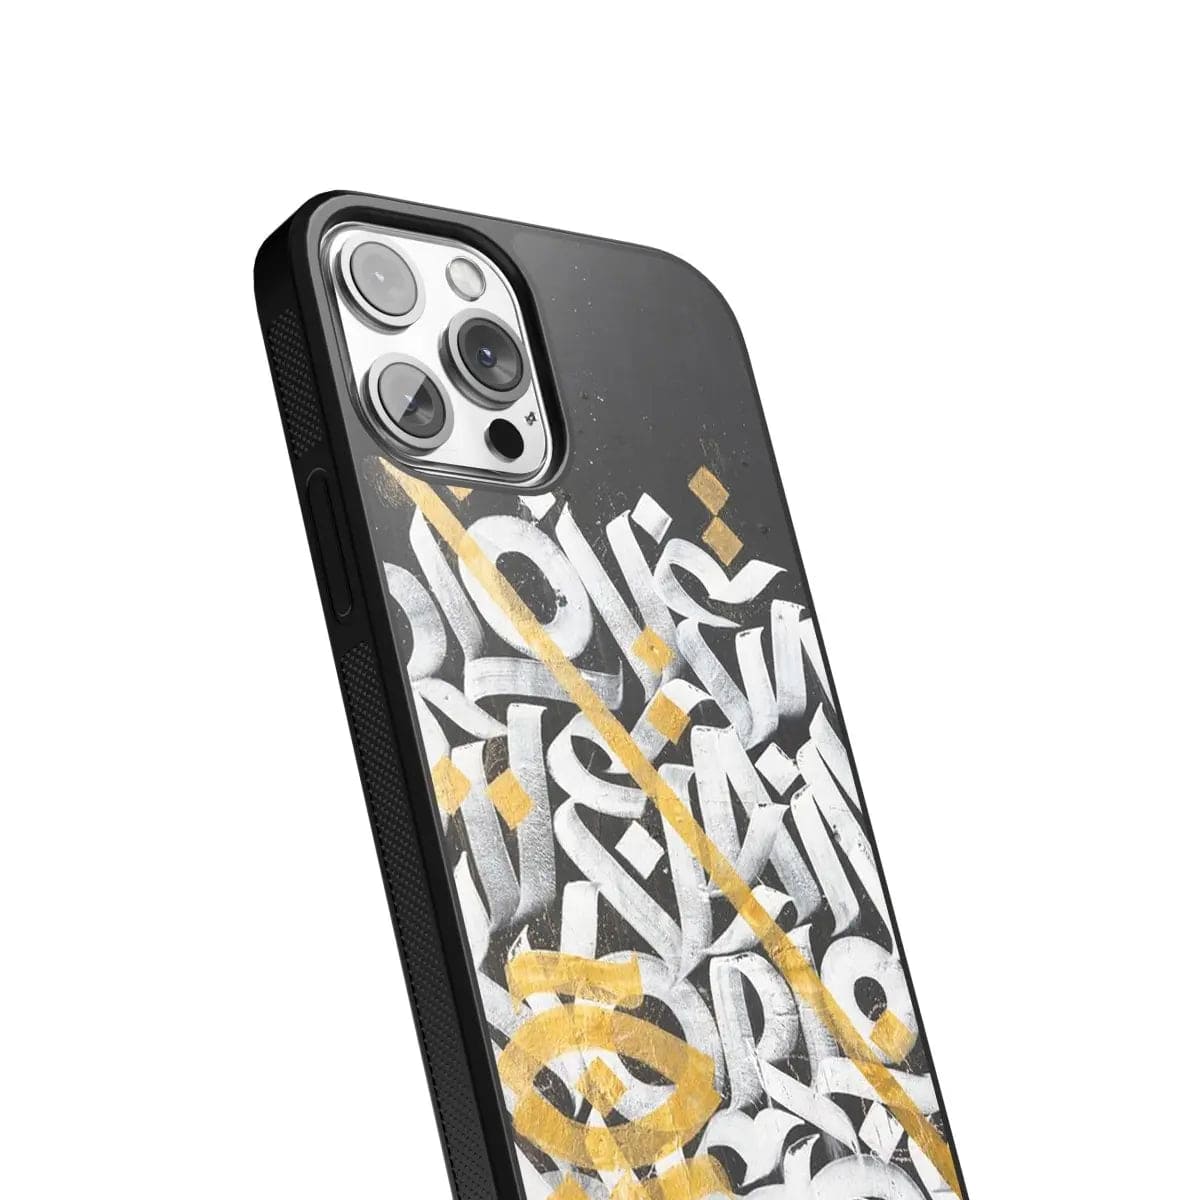 Phone case "Hieroglyphs" - Artcase